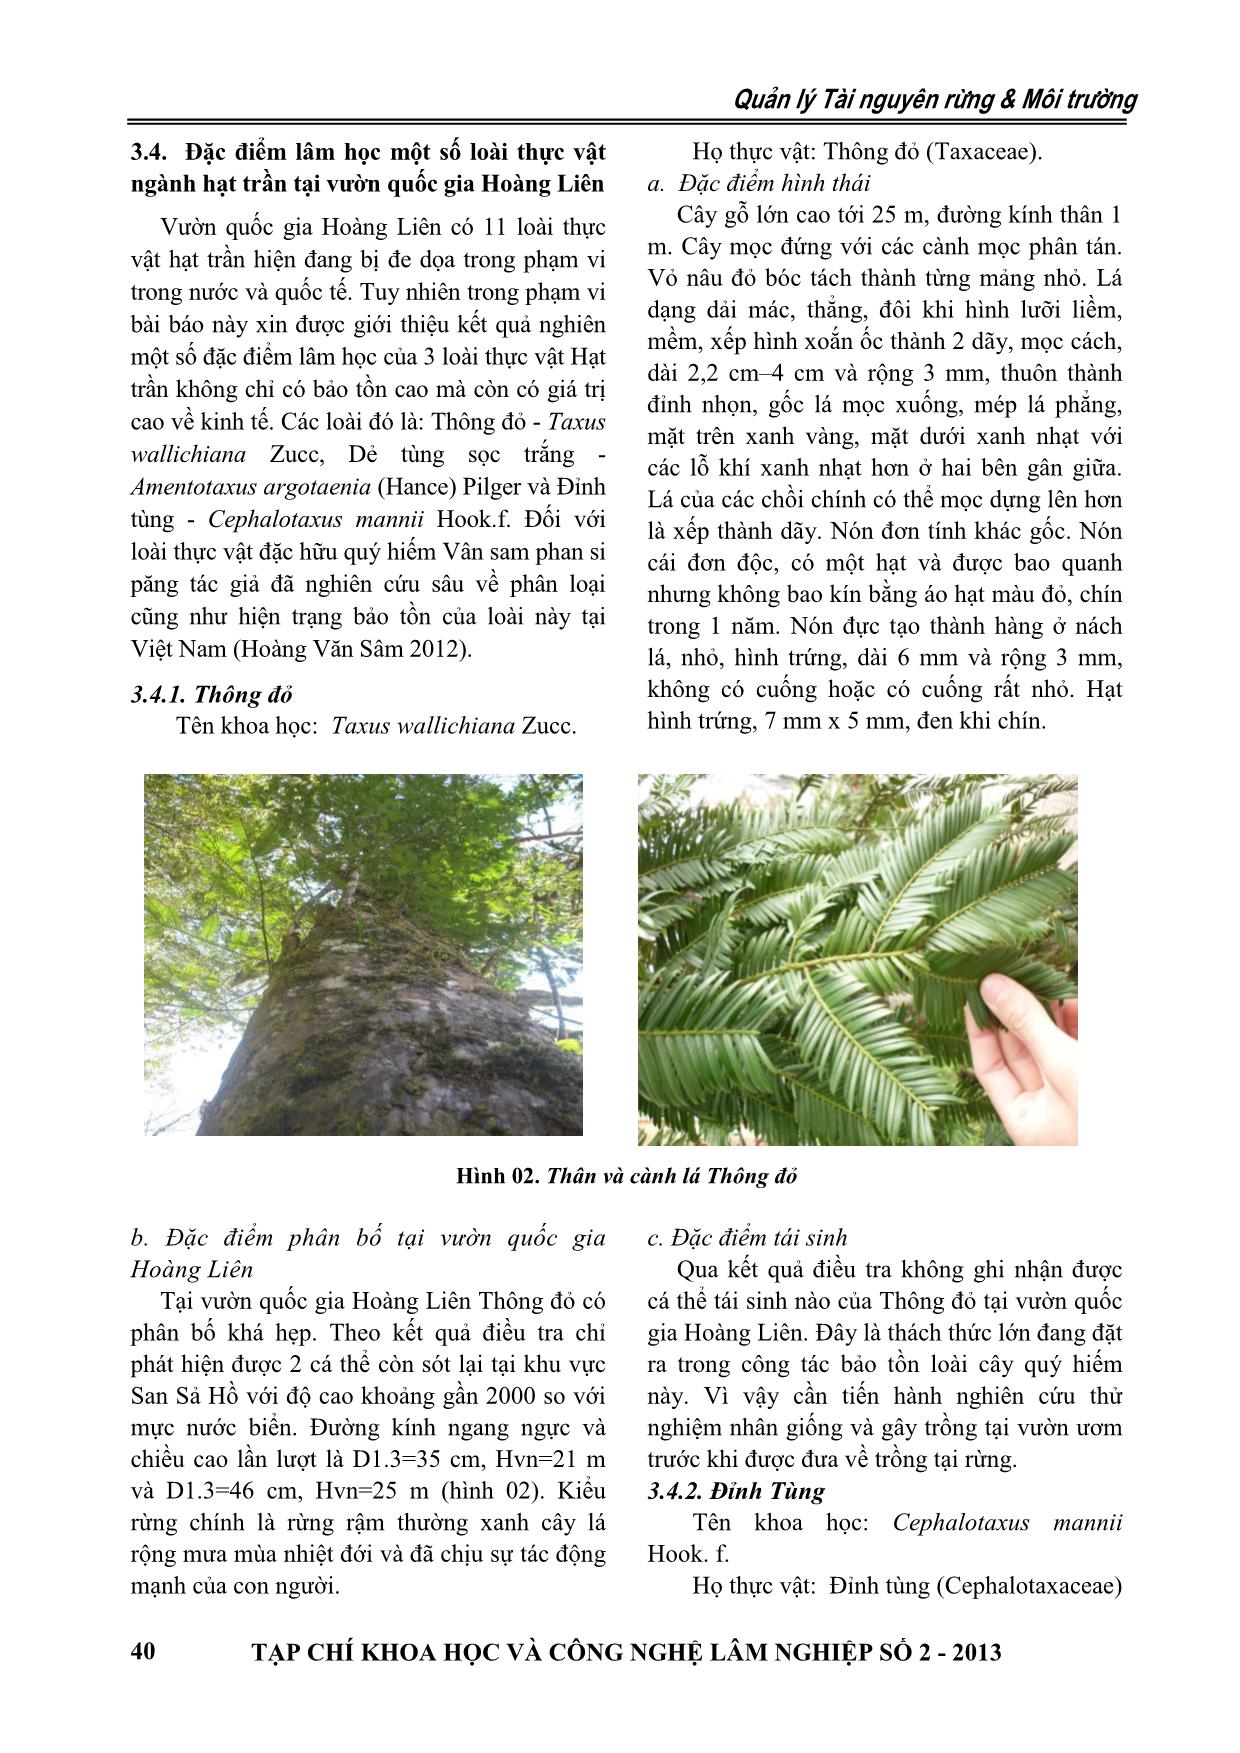 Thành phần loài và hiện trạng bảo tồn thực vật ngành hạt trần (Gymnosperm) tại Vườn quốc gia Hoàng Liên trang 5